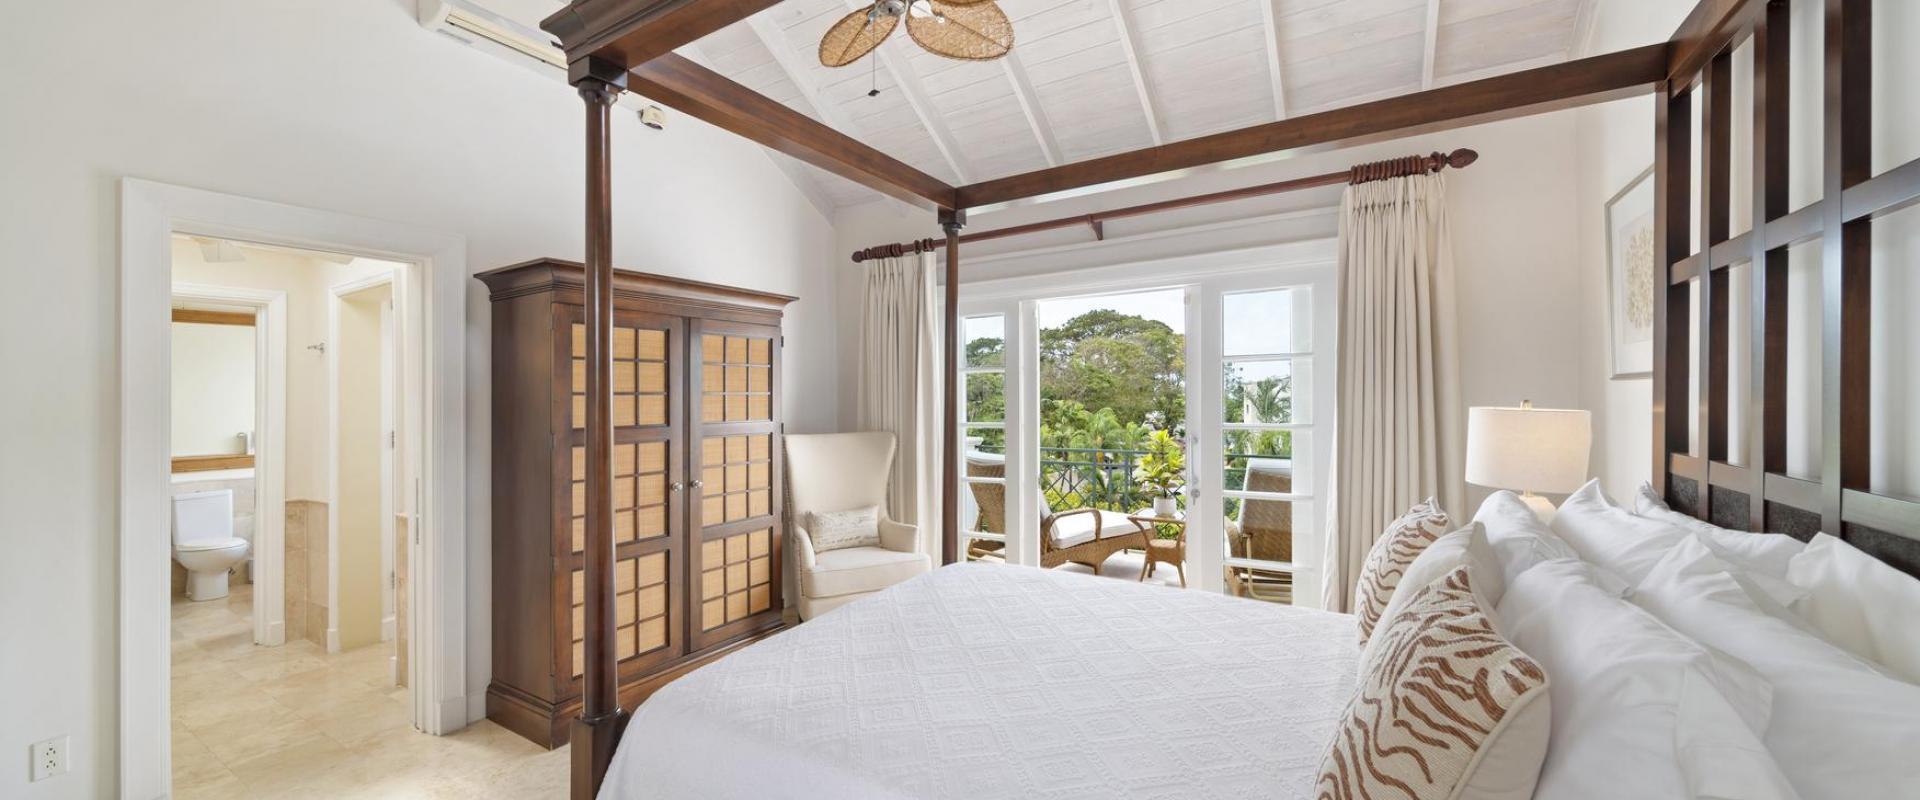 Hummingbird Villa Mullins Bay Barbados Primary Bedroom with Ocean View